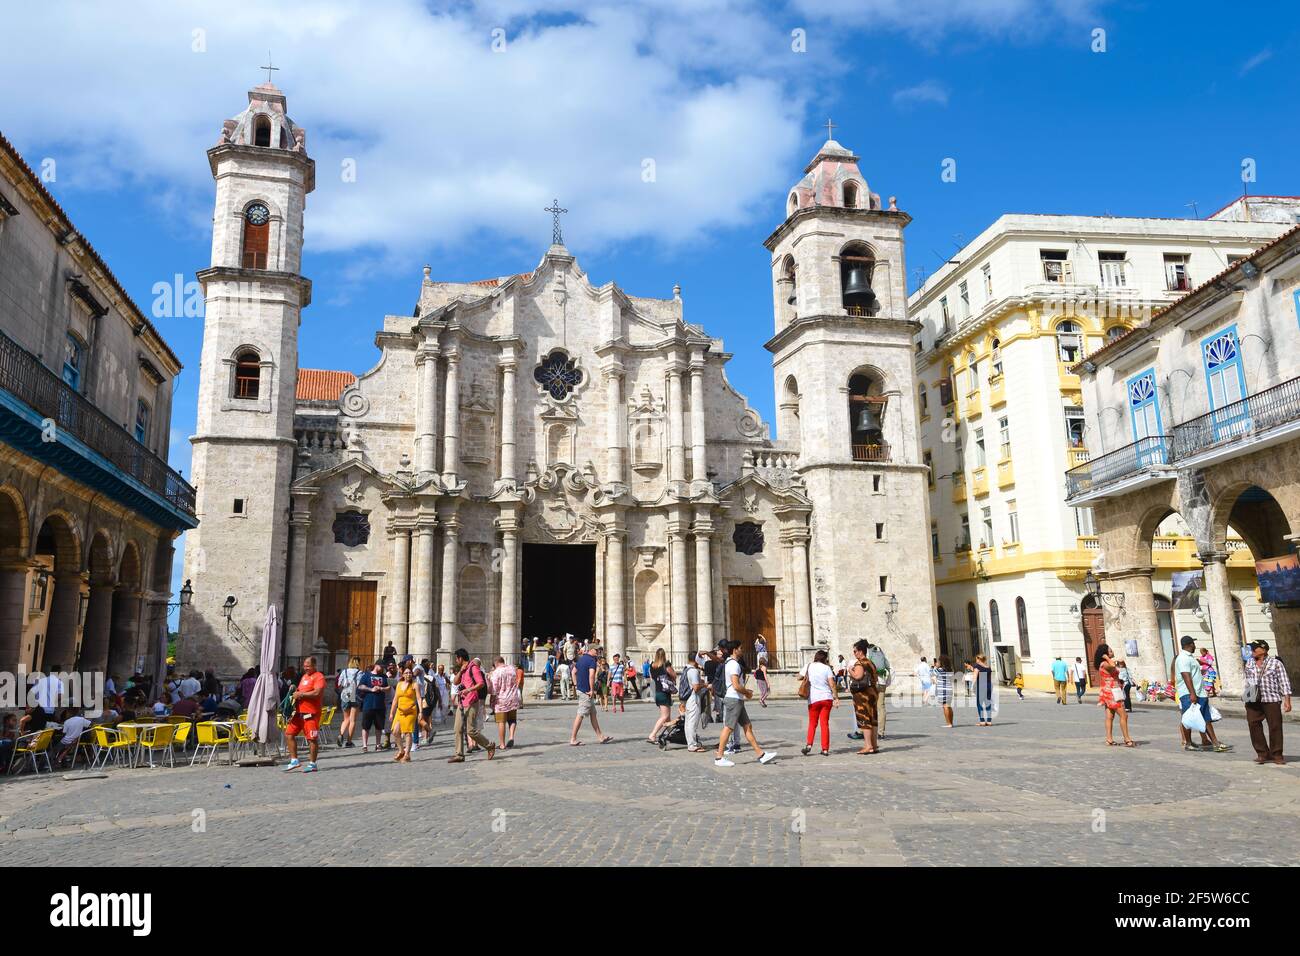 Tourists at Plaza de la Catedral in front of Catedral de San Cristobal / Havana Cathedral in Cuba. La Catedral de la Virgen María de La Habana. Stock Photo